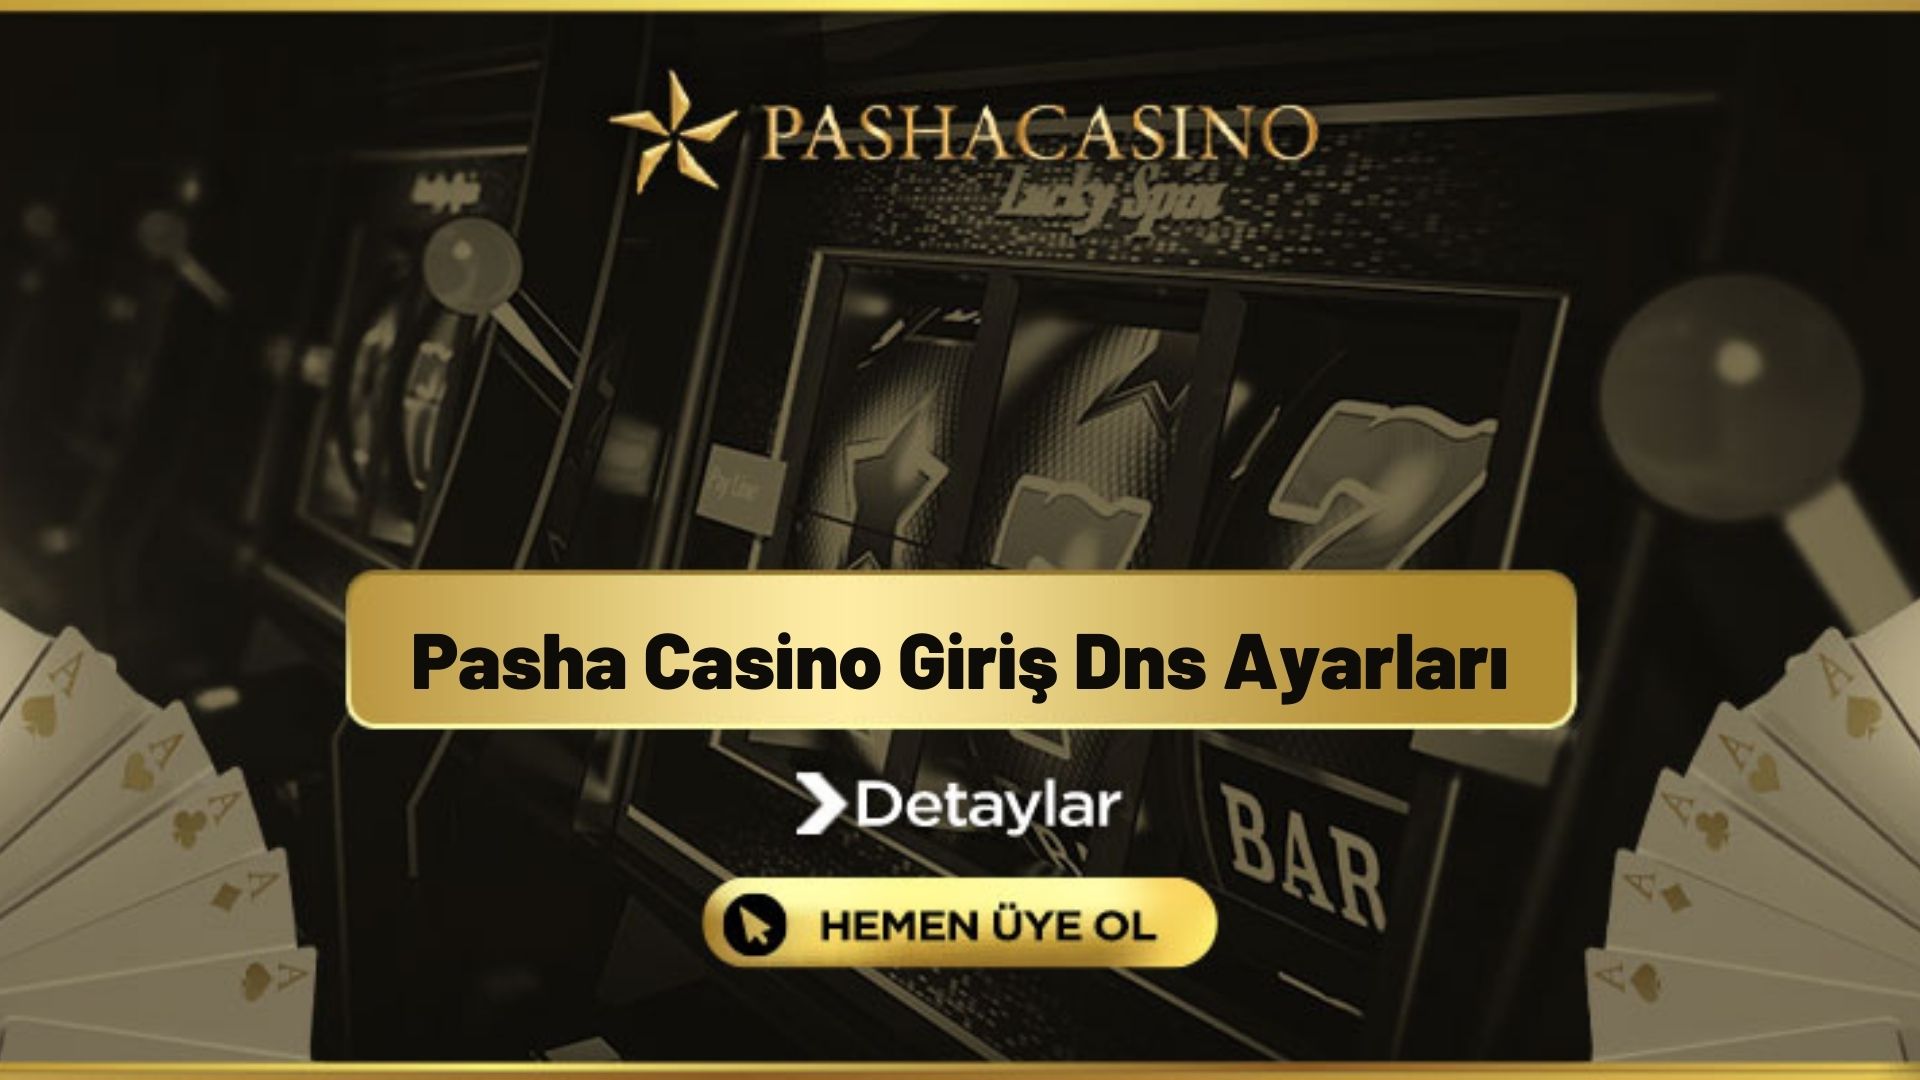 Pasha Casino Giriş Dns Ayarları